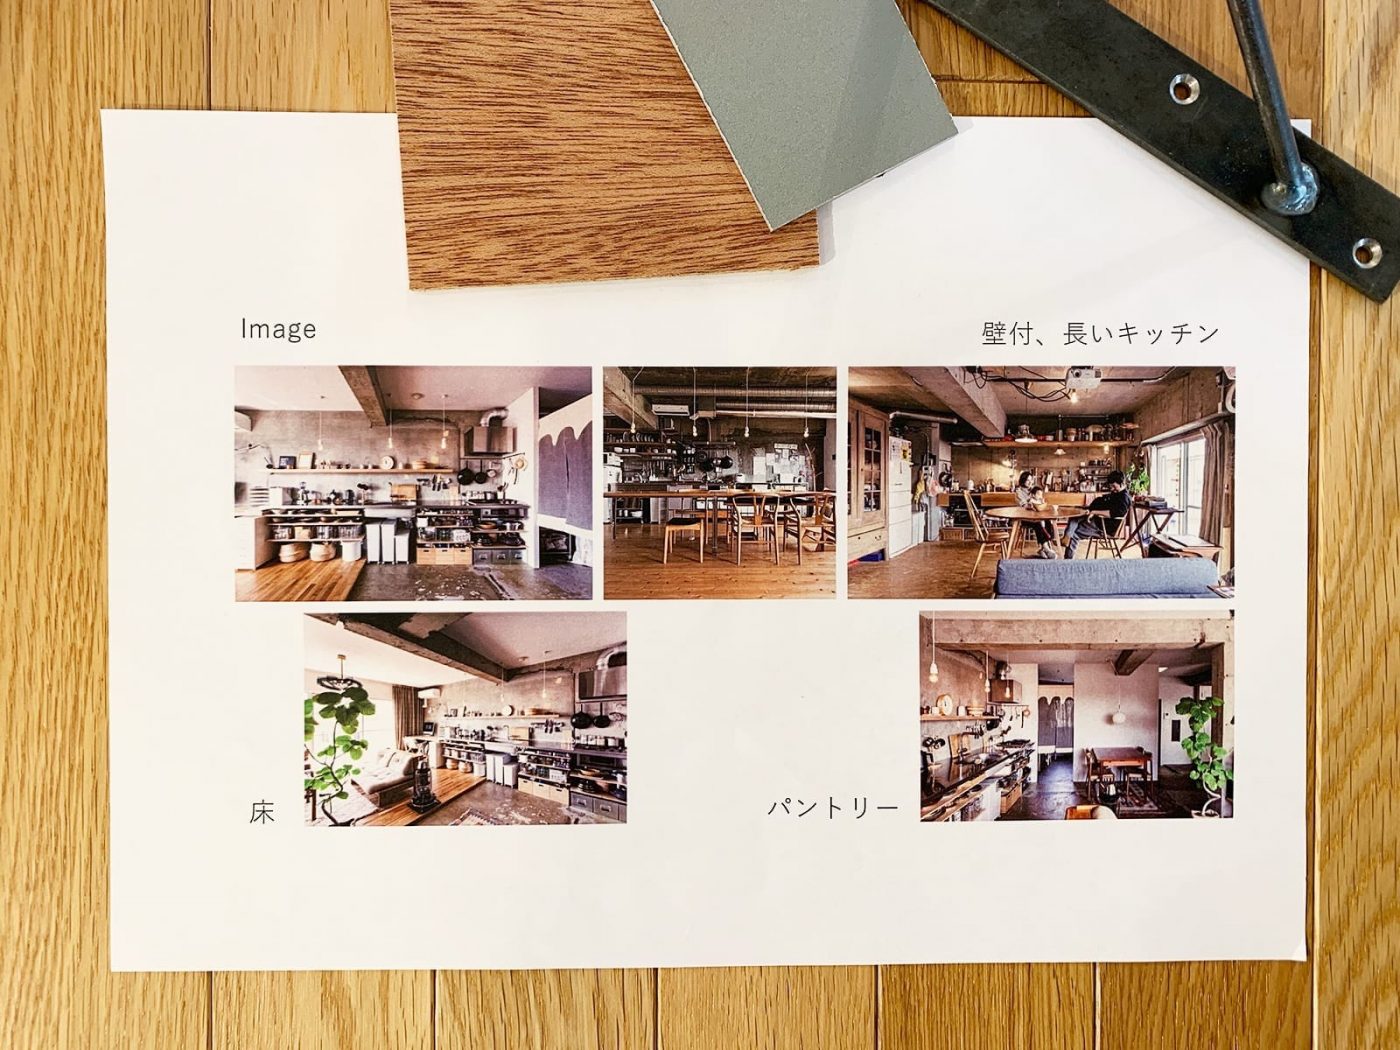 事例写真を使って大杉さんの理想を集めた、イメージボード。